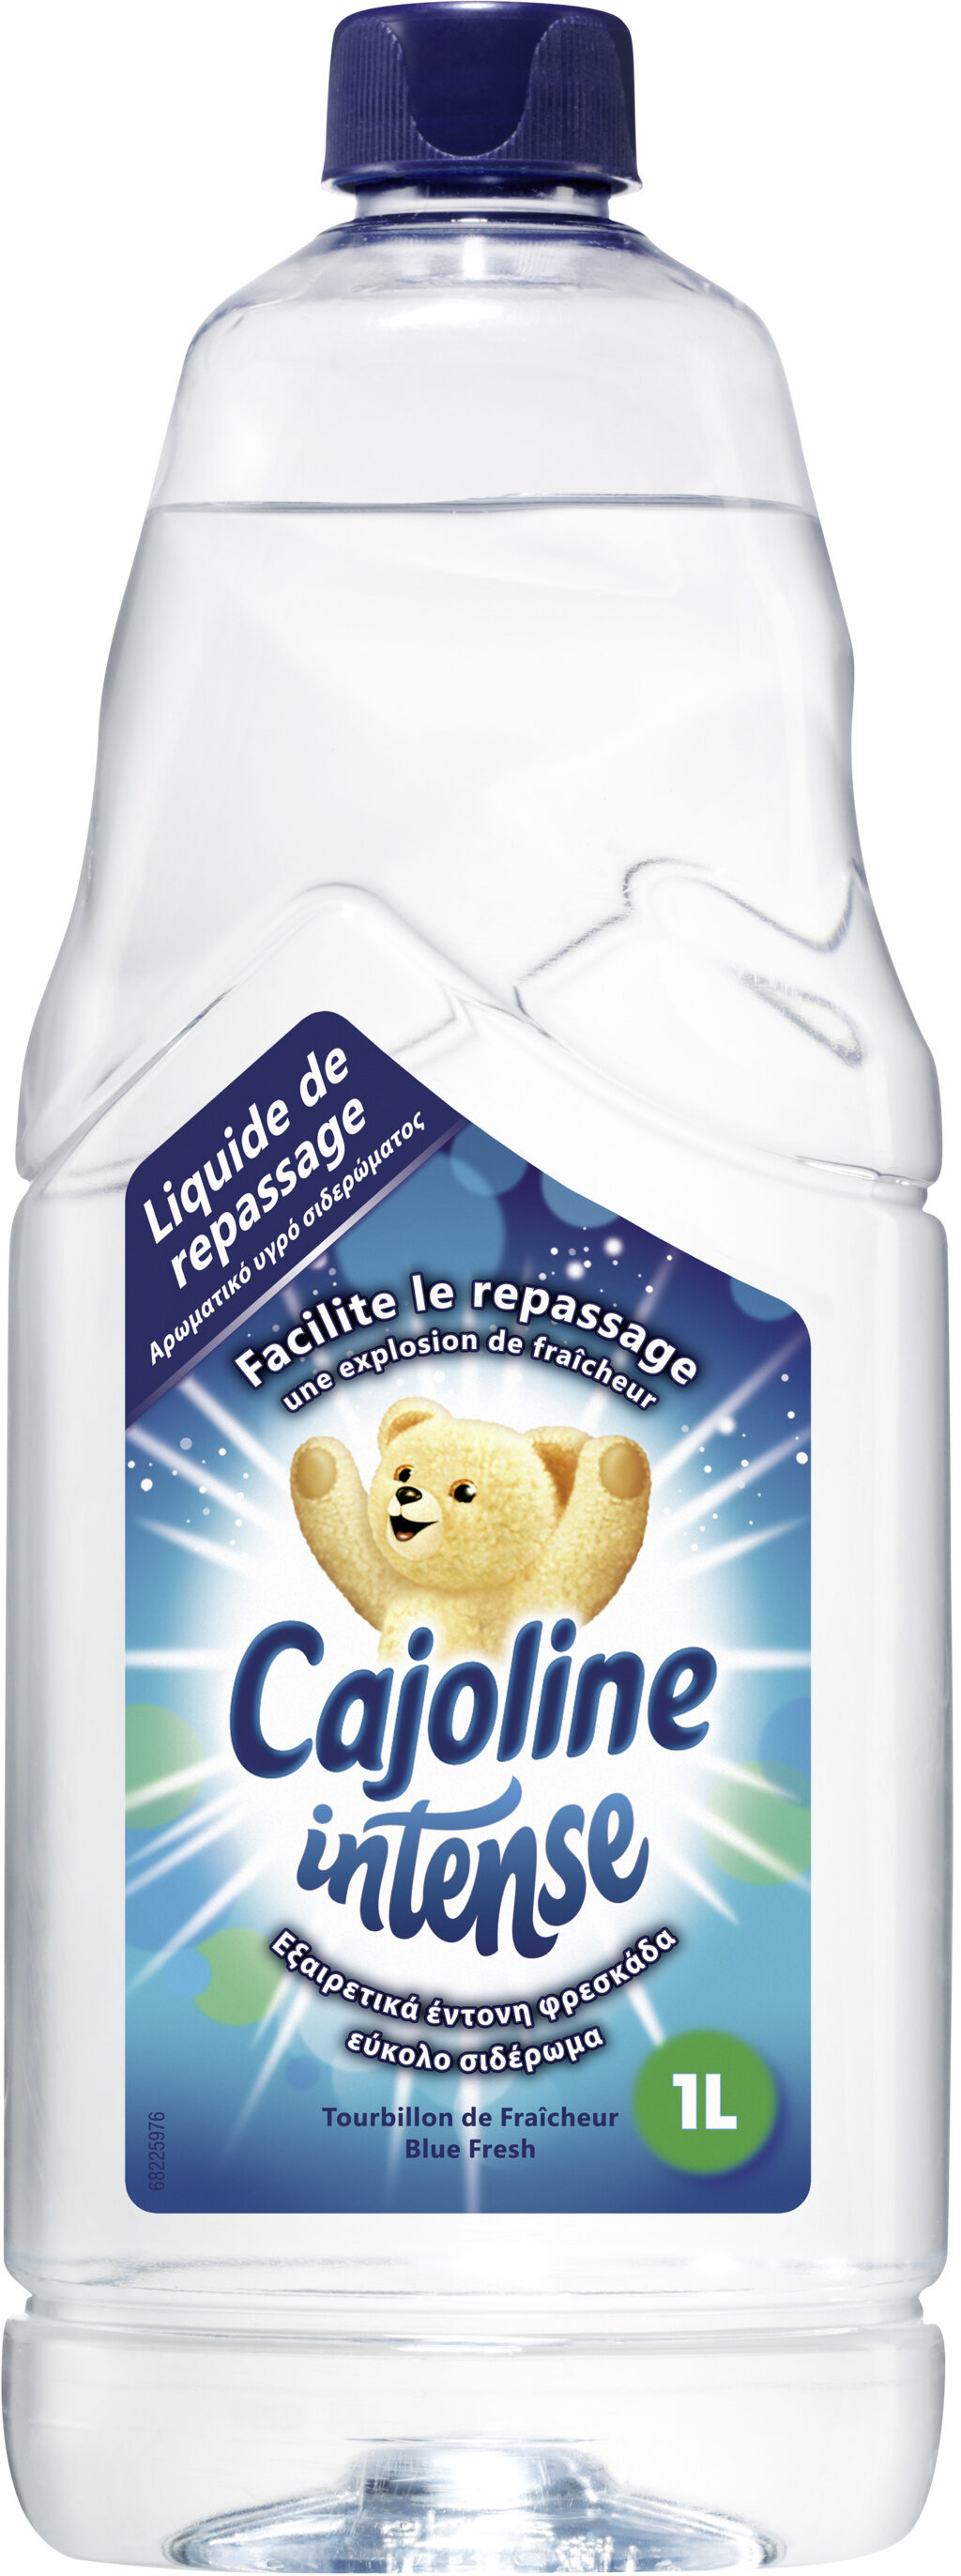 Cajoline Intense Eau De Repassage Parfumée Fraîcheur Printanière Bouteille 750ml - Product - fr